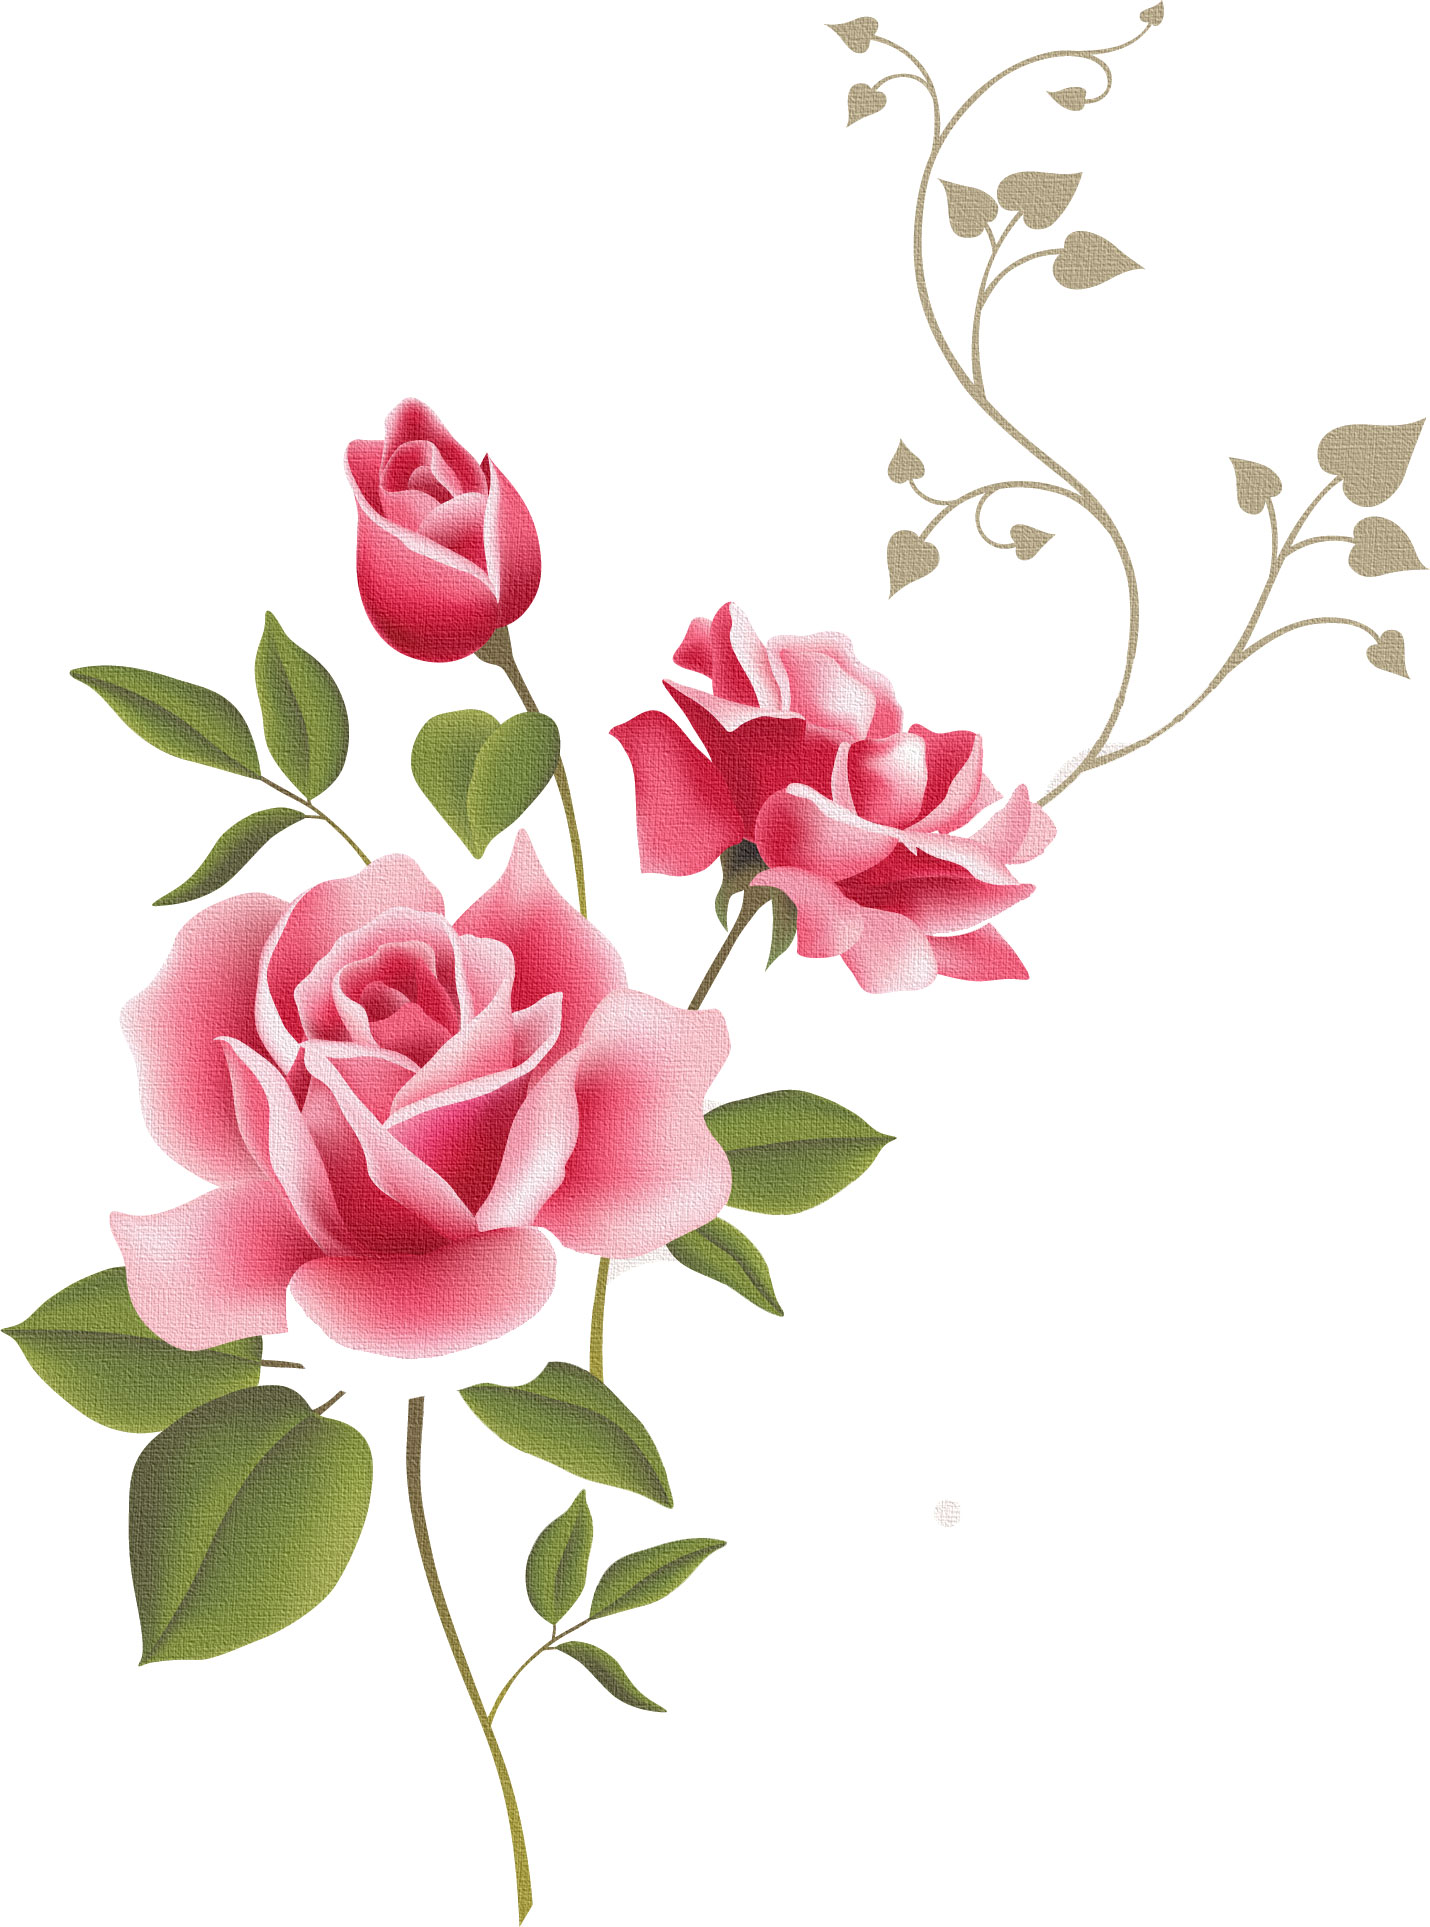 Rose art, Flower art, Flower wall stickers